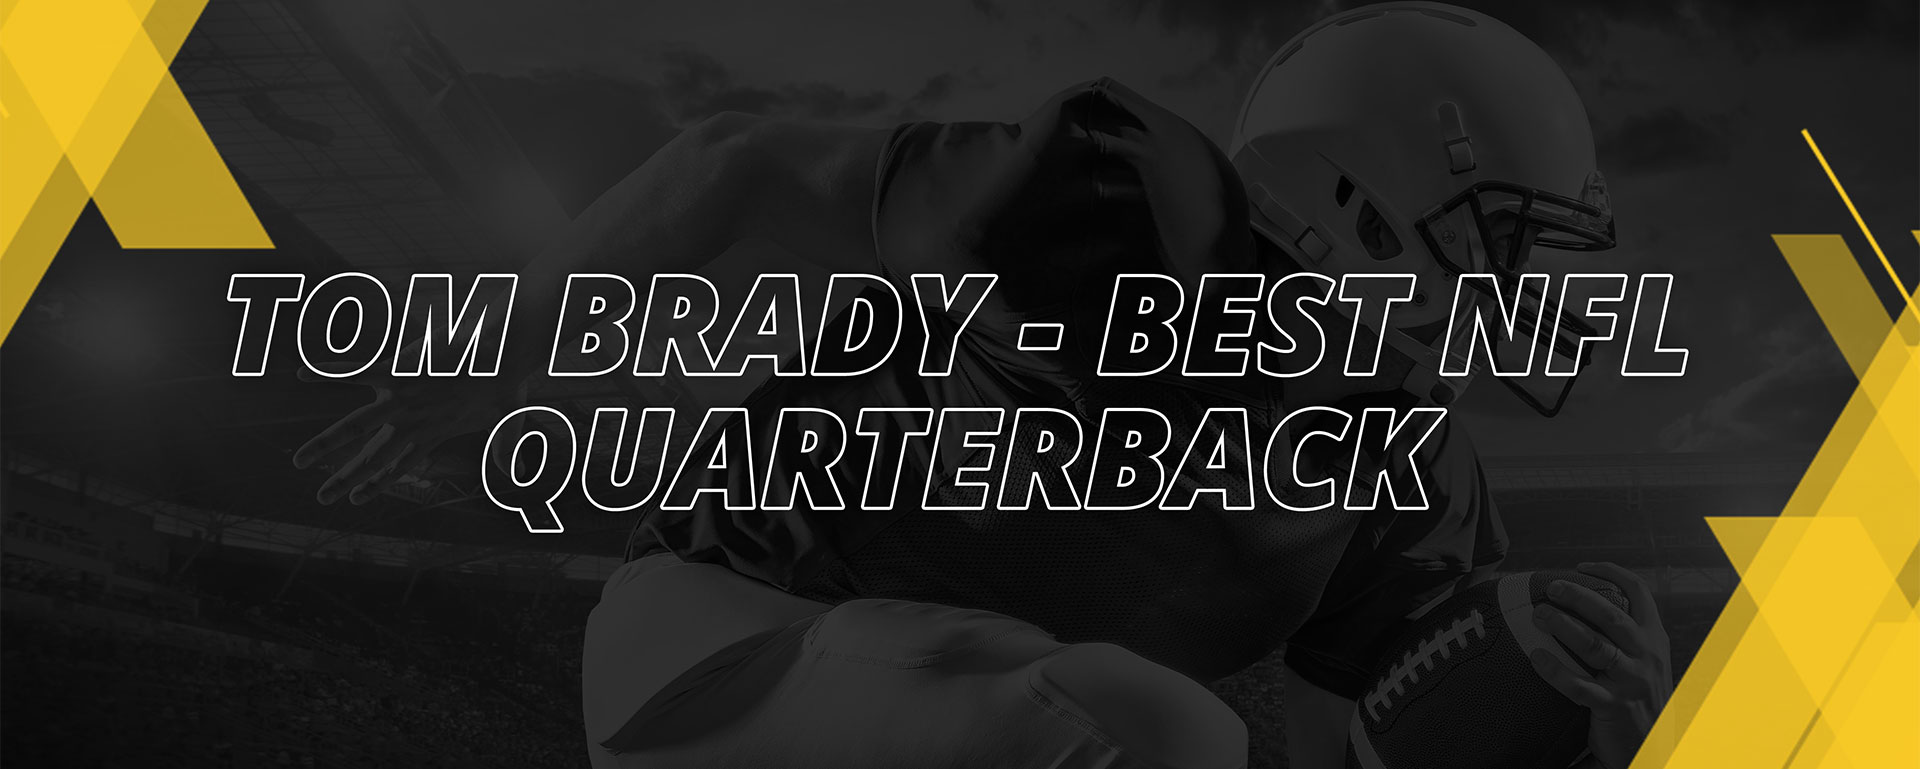 TOM BRADY – BEST NFL QUARTERBACK